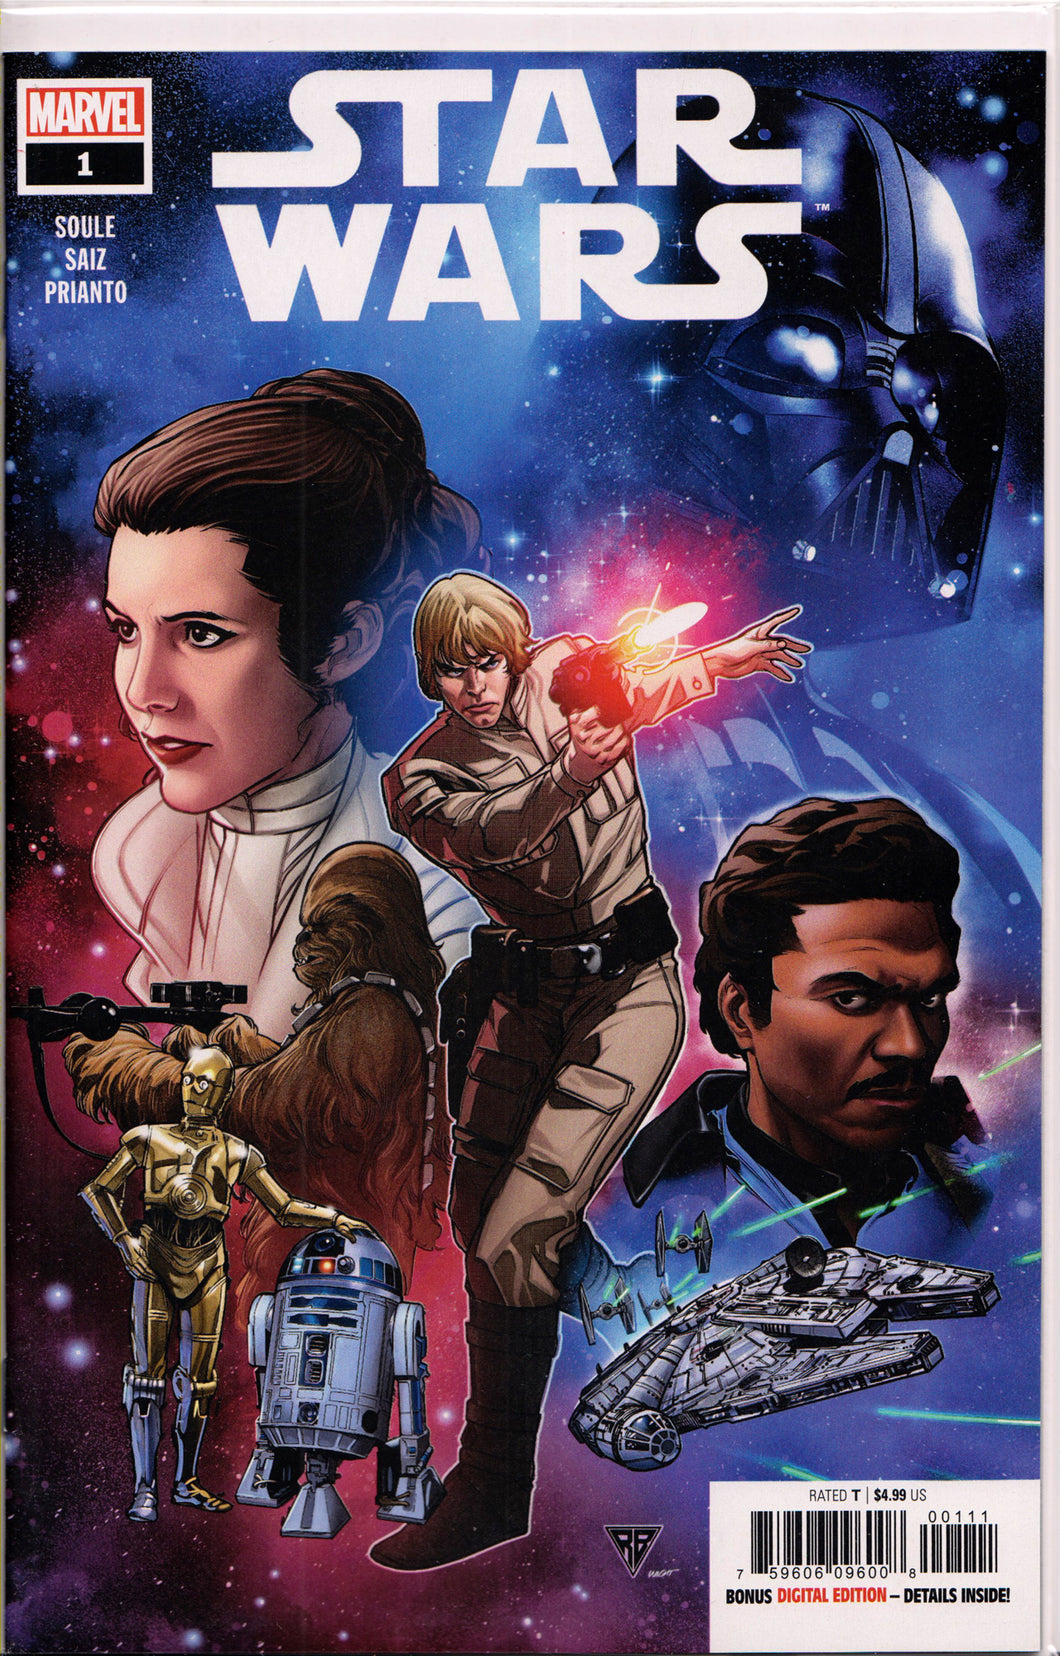 STAR WARS #1 (1ST PRINT) COMIC BOOK ~ Marvel Comics